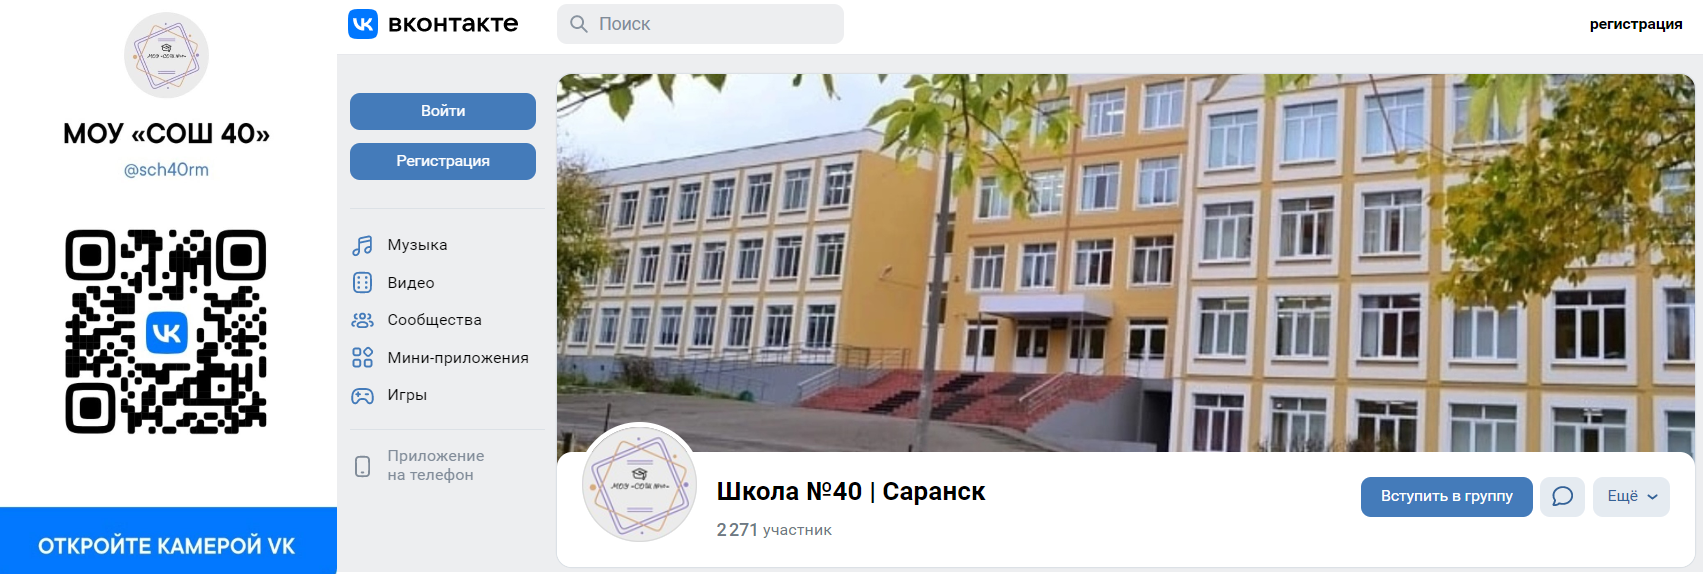 Сканируйте QR код камерой телефона и переходите на официальный сайт школы в социальной сети ВКонтакте, там мы каждый день публикуем информацию для вас.